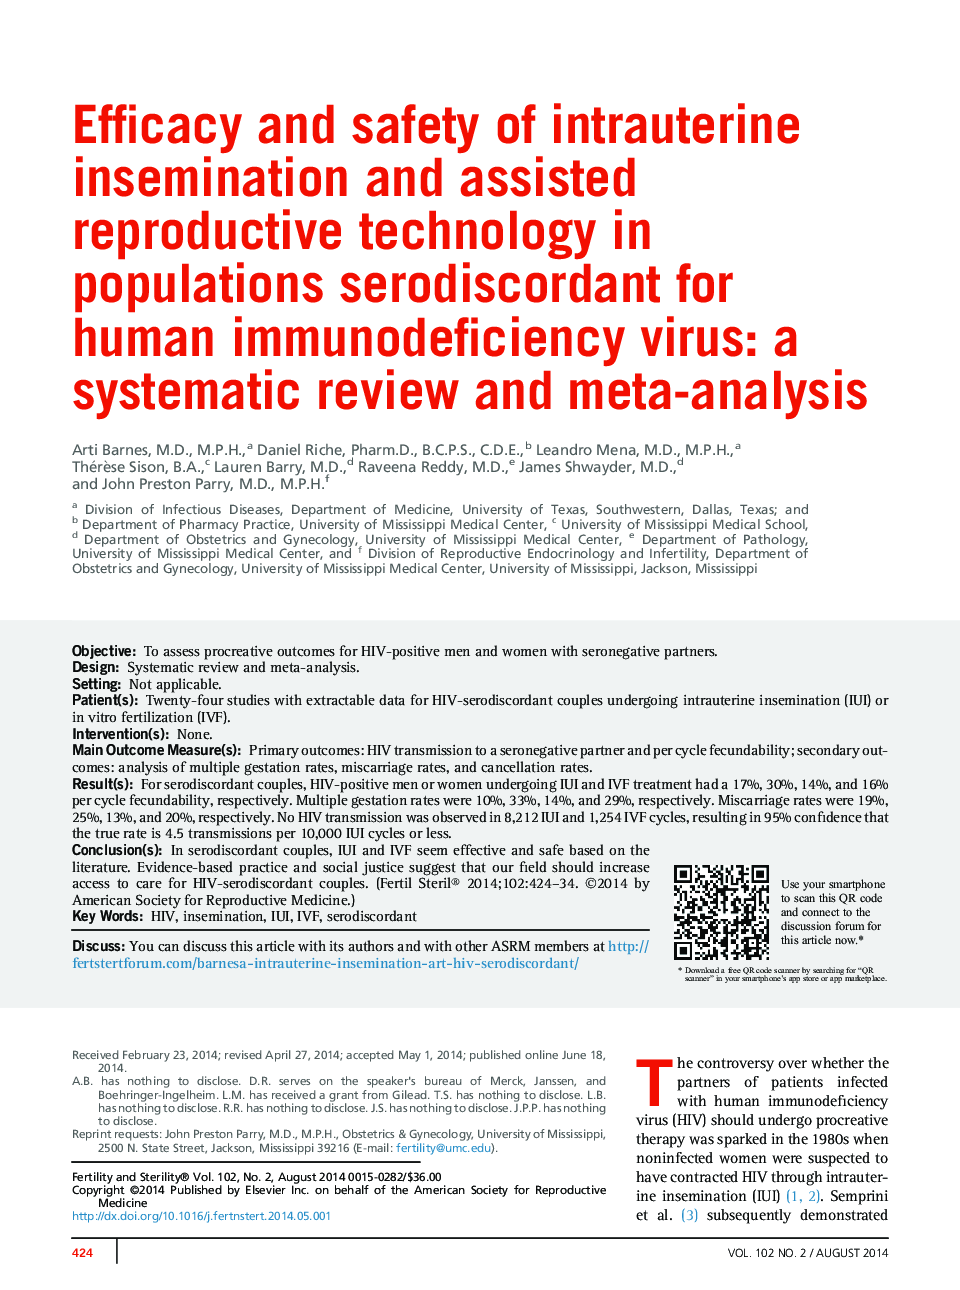 اثربخشی و ایمنی تلقیح داخل رحمی و تکنولوژی تولید مثل در جمعیت های مبتلا به ویروس نقص ایمنی بدن: یک بررسی سیستماتیک و متا آنالیز 